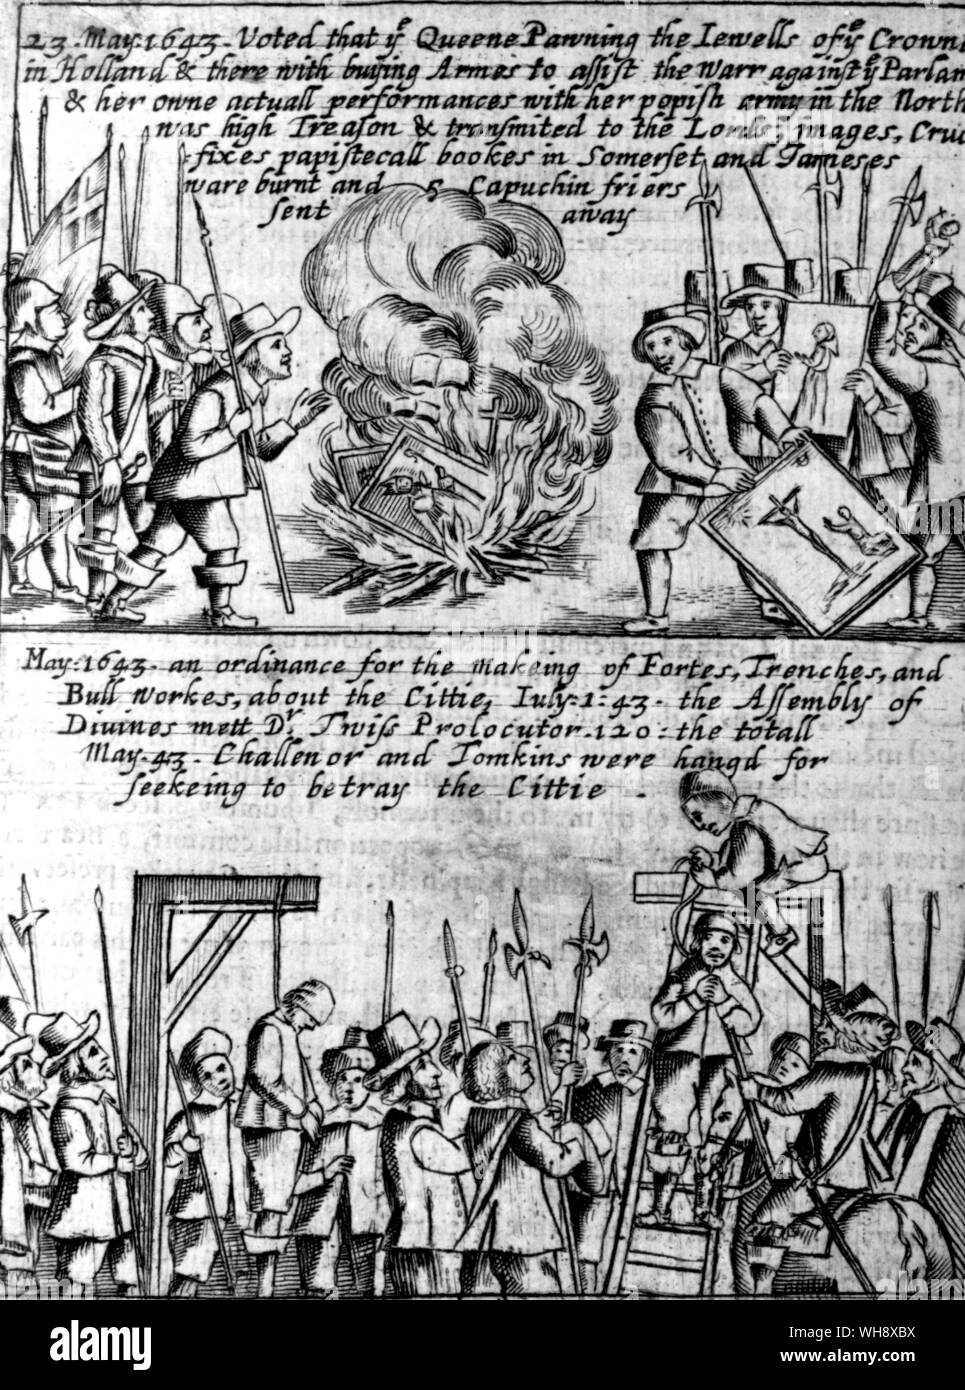 Mai 1643 Verbrennung von popish heiligen Bücher und Bilder und die Hinrichtungen im Anschluß an die Entdeckung des Waller plot. Aufhängen von challenor und Tomkin Stockfoto